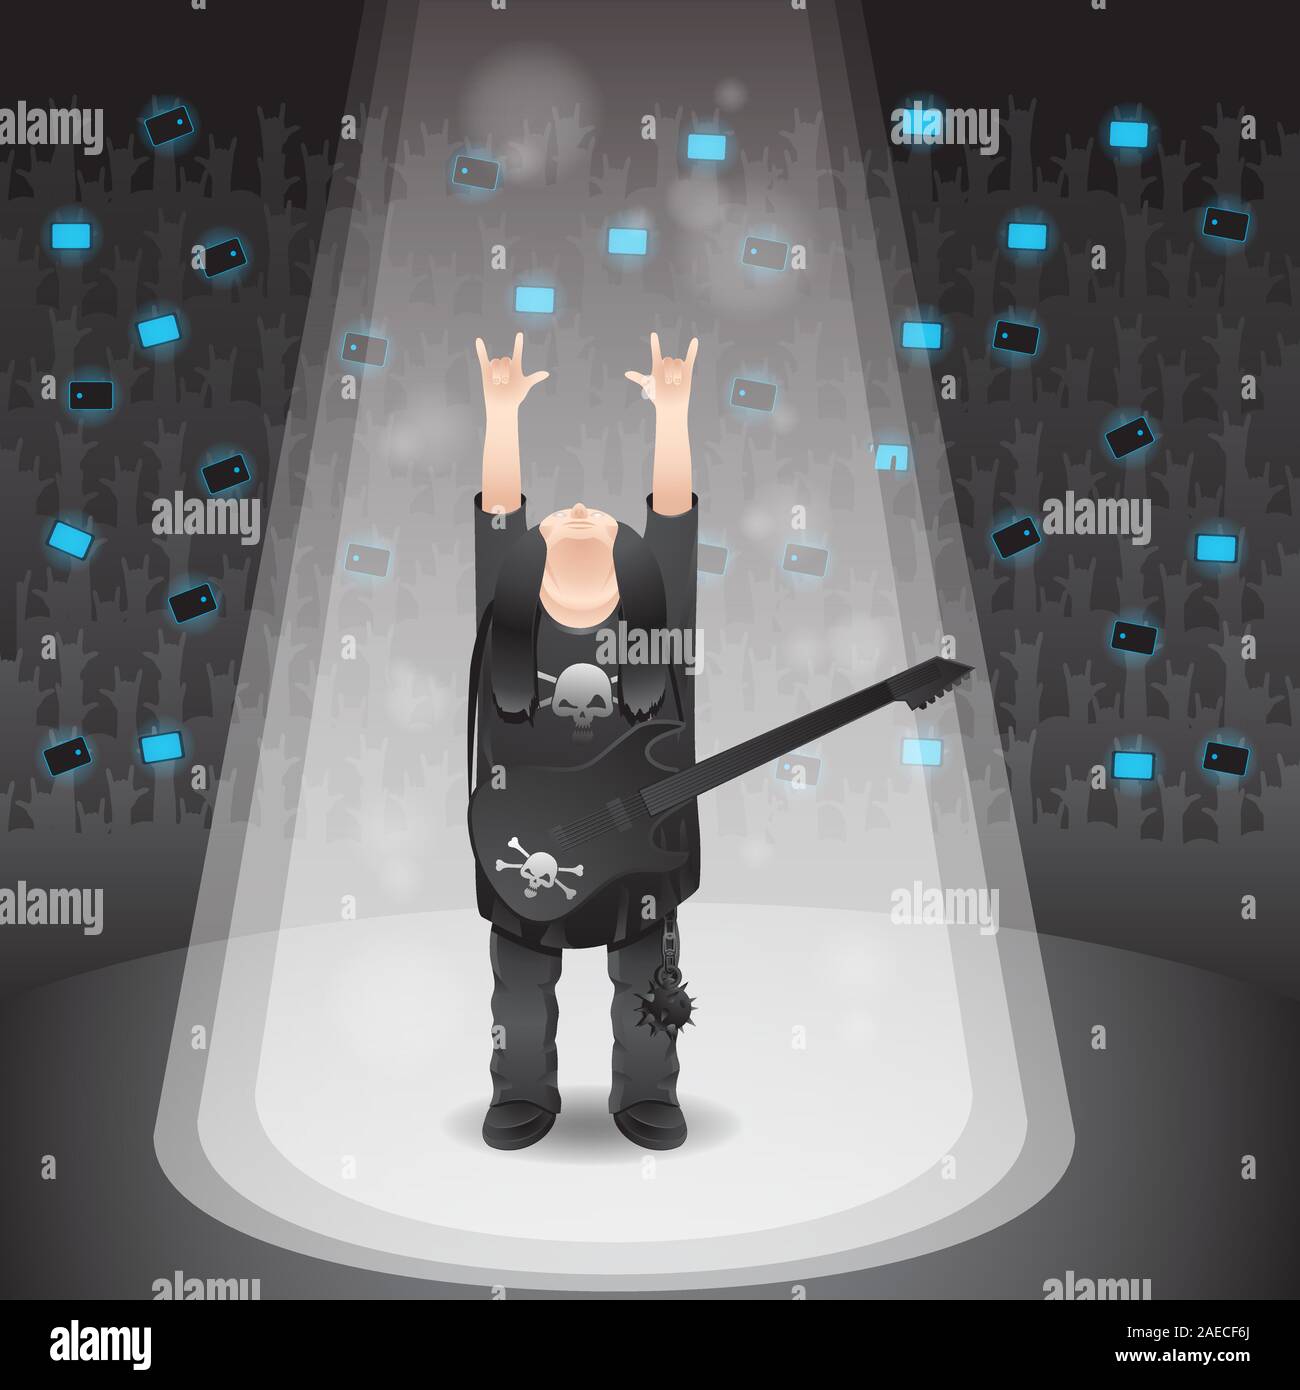 Illustrazione di un cantante rock mostrare un avvisatore acustico gesto isolato su un background. Immagine vettoriale Illustrazione Vettoriale